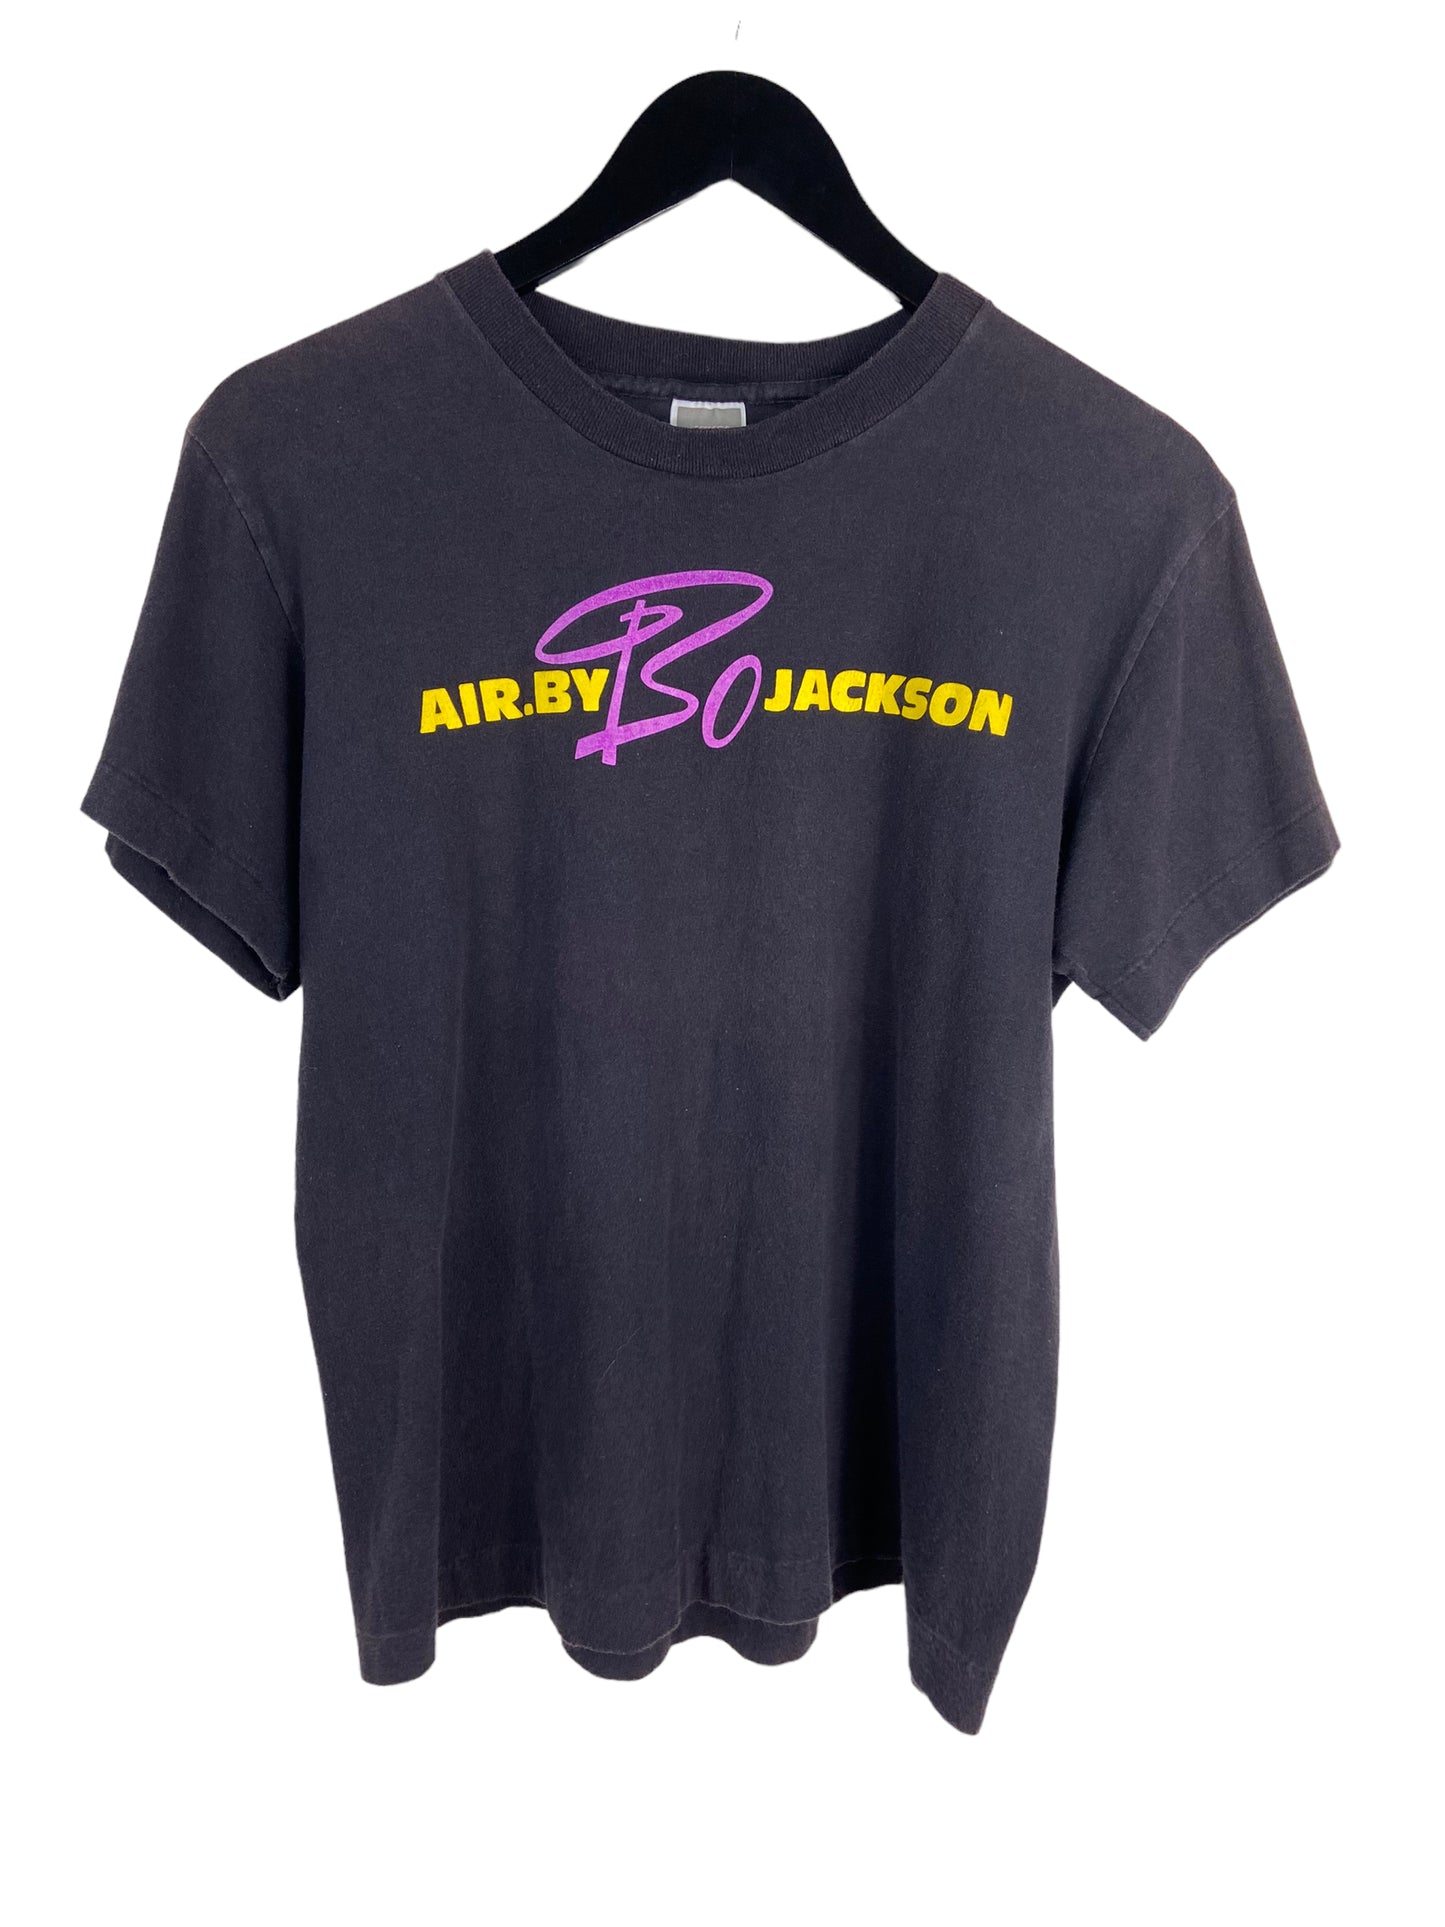 VTG Air by Bo Jackson T-Shirt Sz S/M